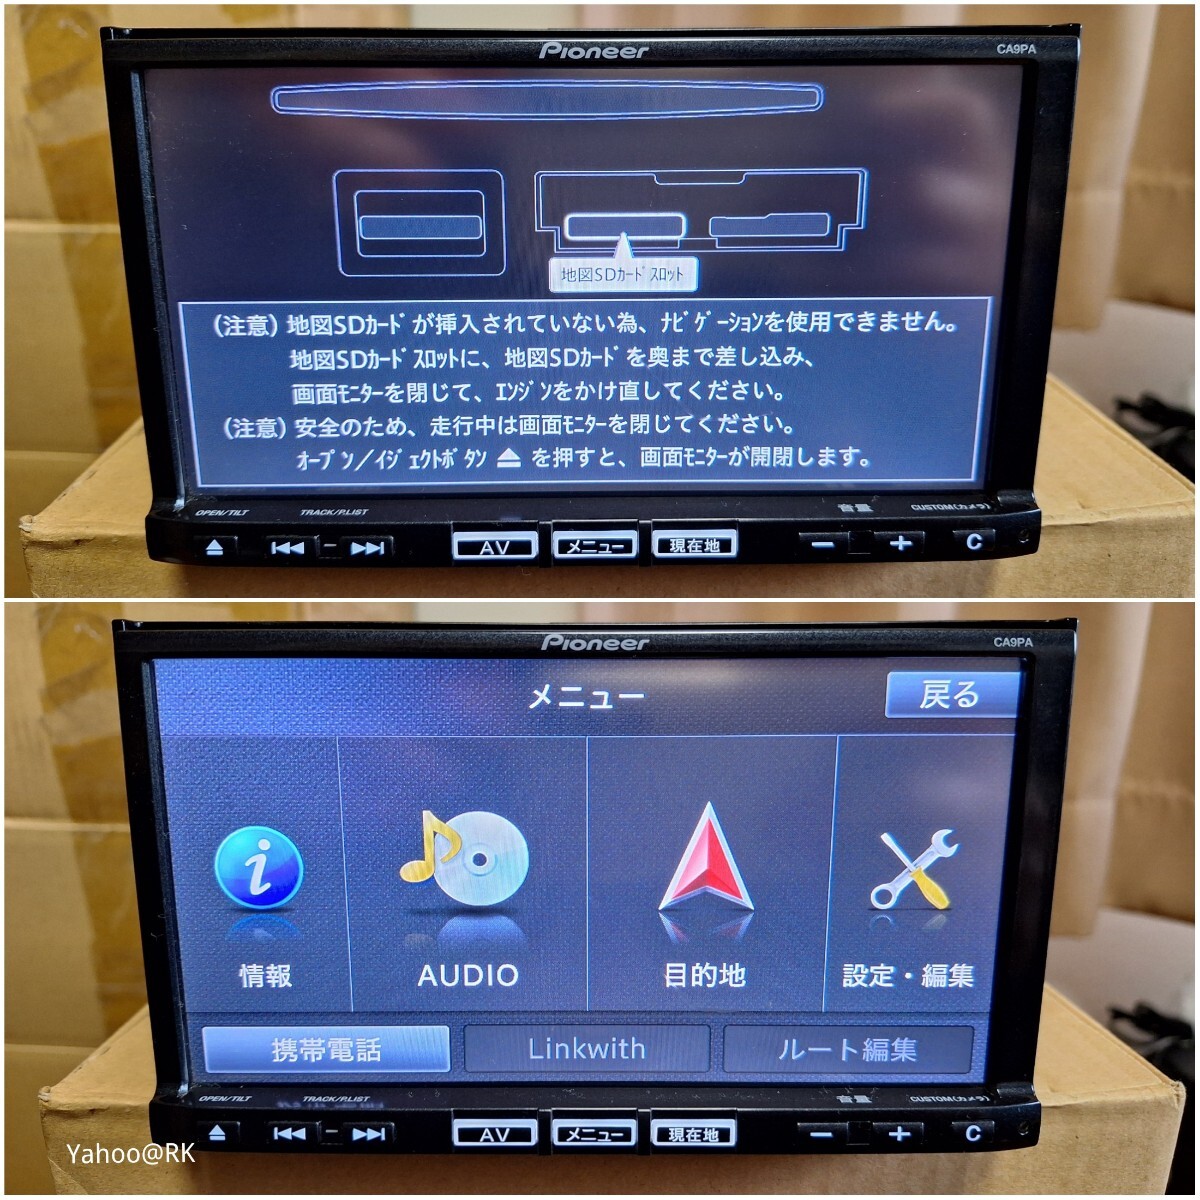 マツダ 純正ナビ 型式 C9PA Pioneer カロッツェリア DVD再生 Bluetooth テレビ フルセグ SDカード USB iPod HDMI CD録音 地図SDカードなし_画像1